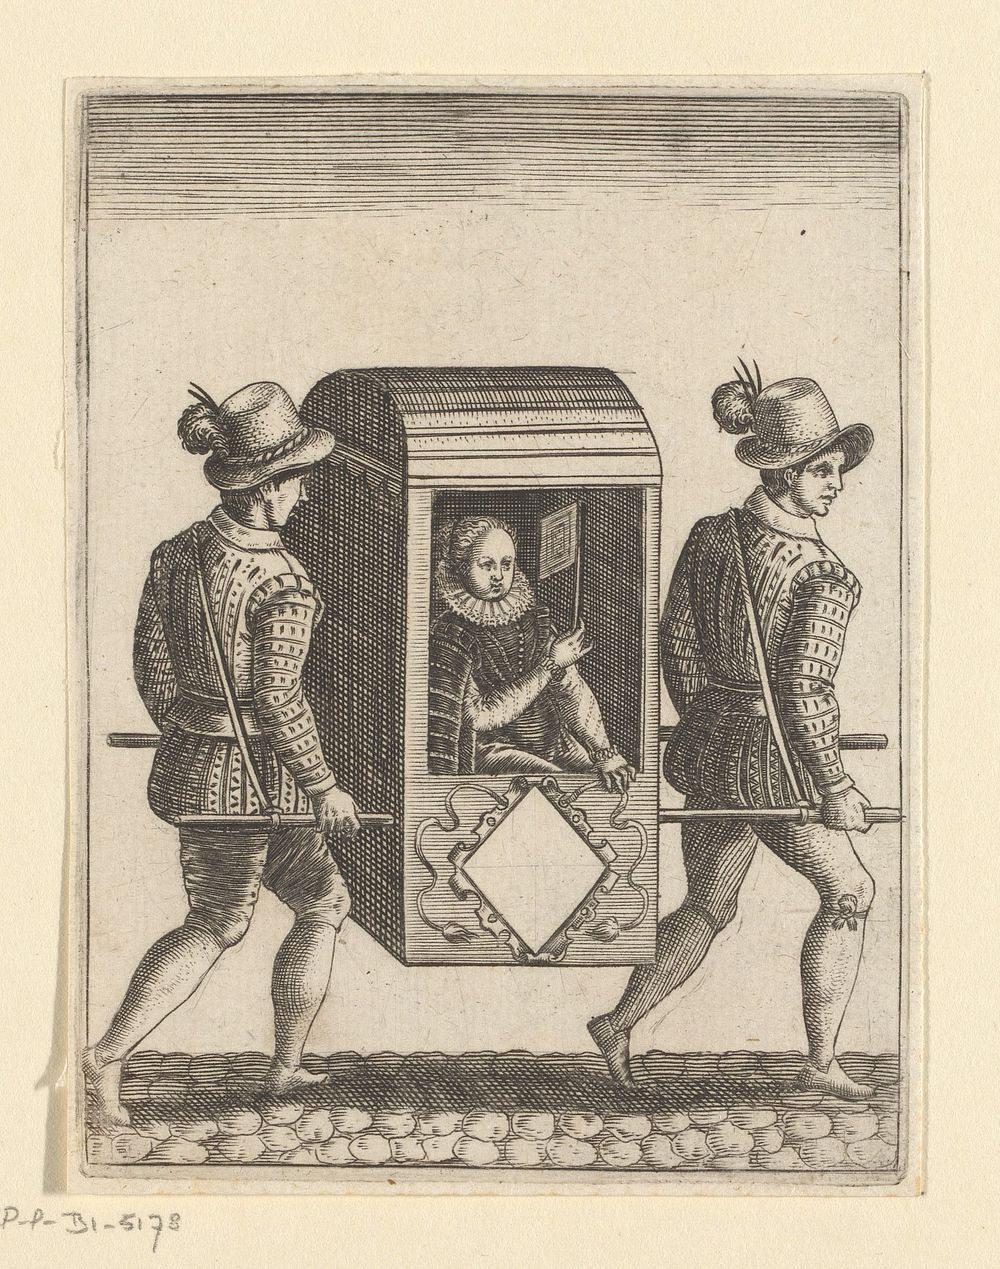 Wapensjabloon met vrouw in draagstoel (1596) by Johann Theodor de Bry, anonymous and Johann Theodor en Johann Israel de Bry